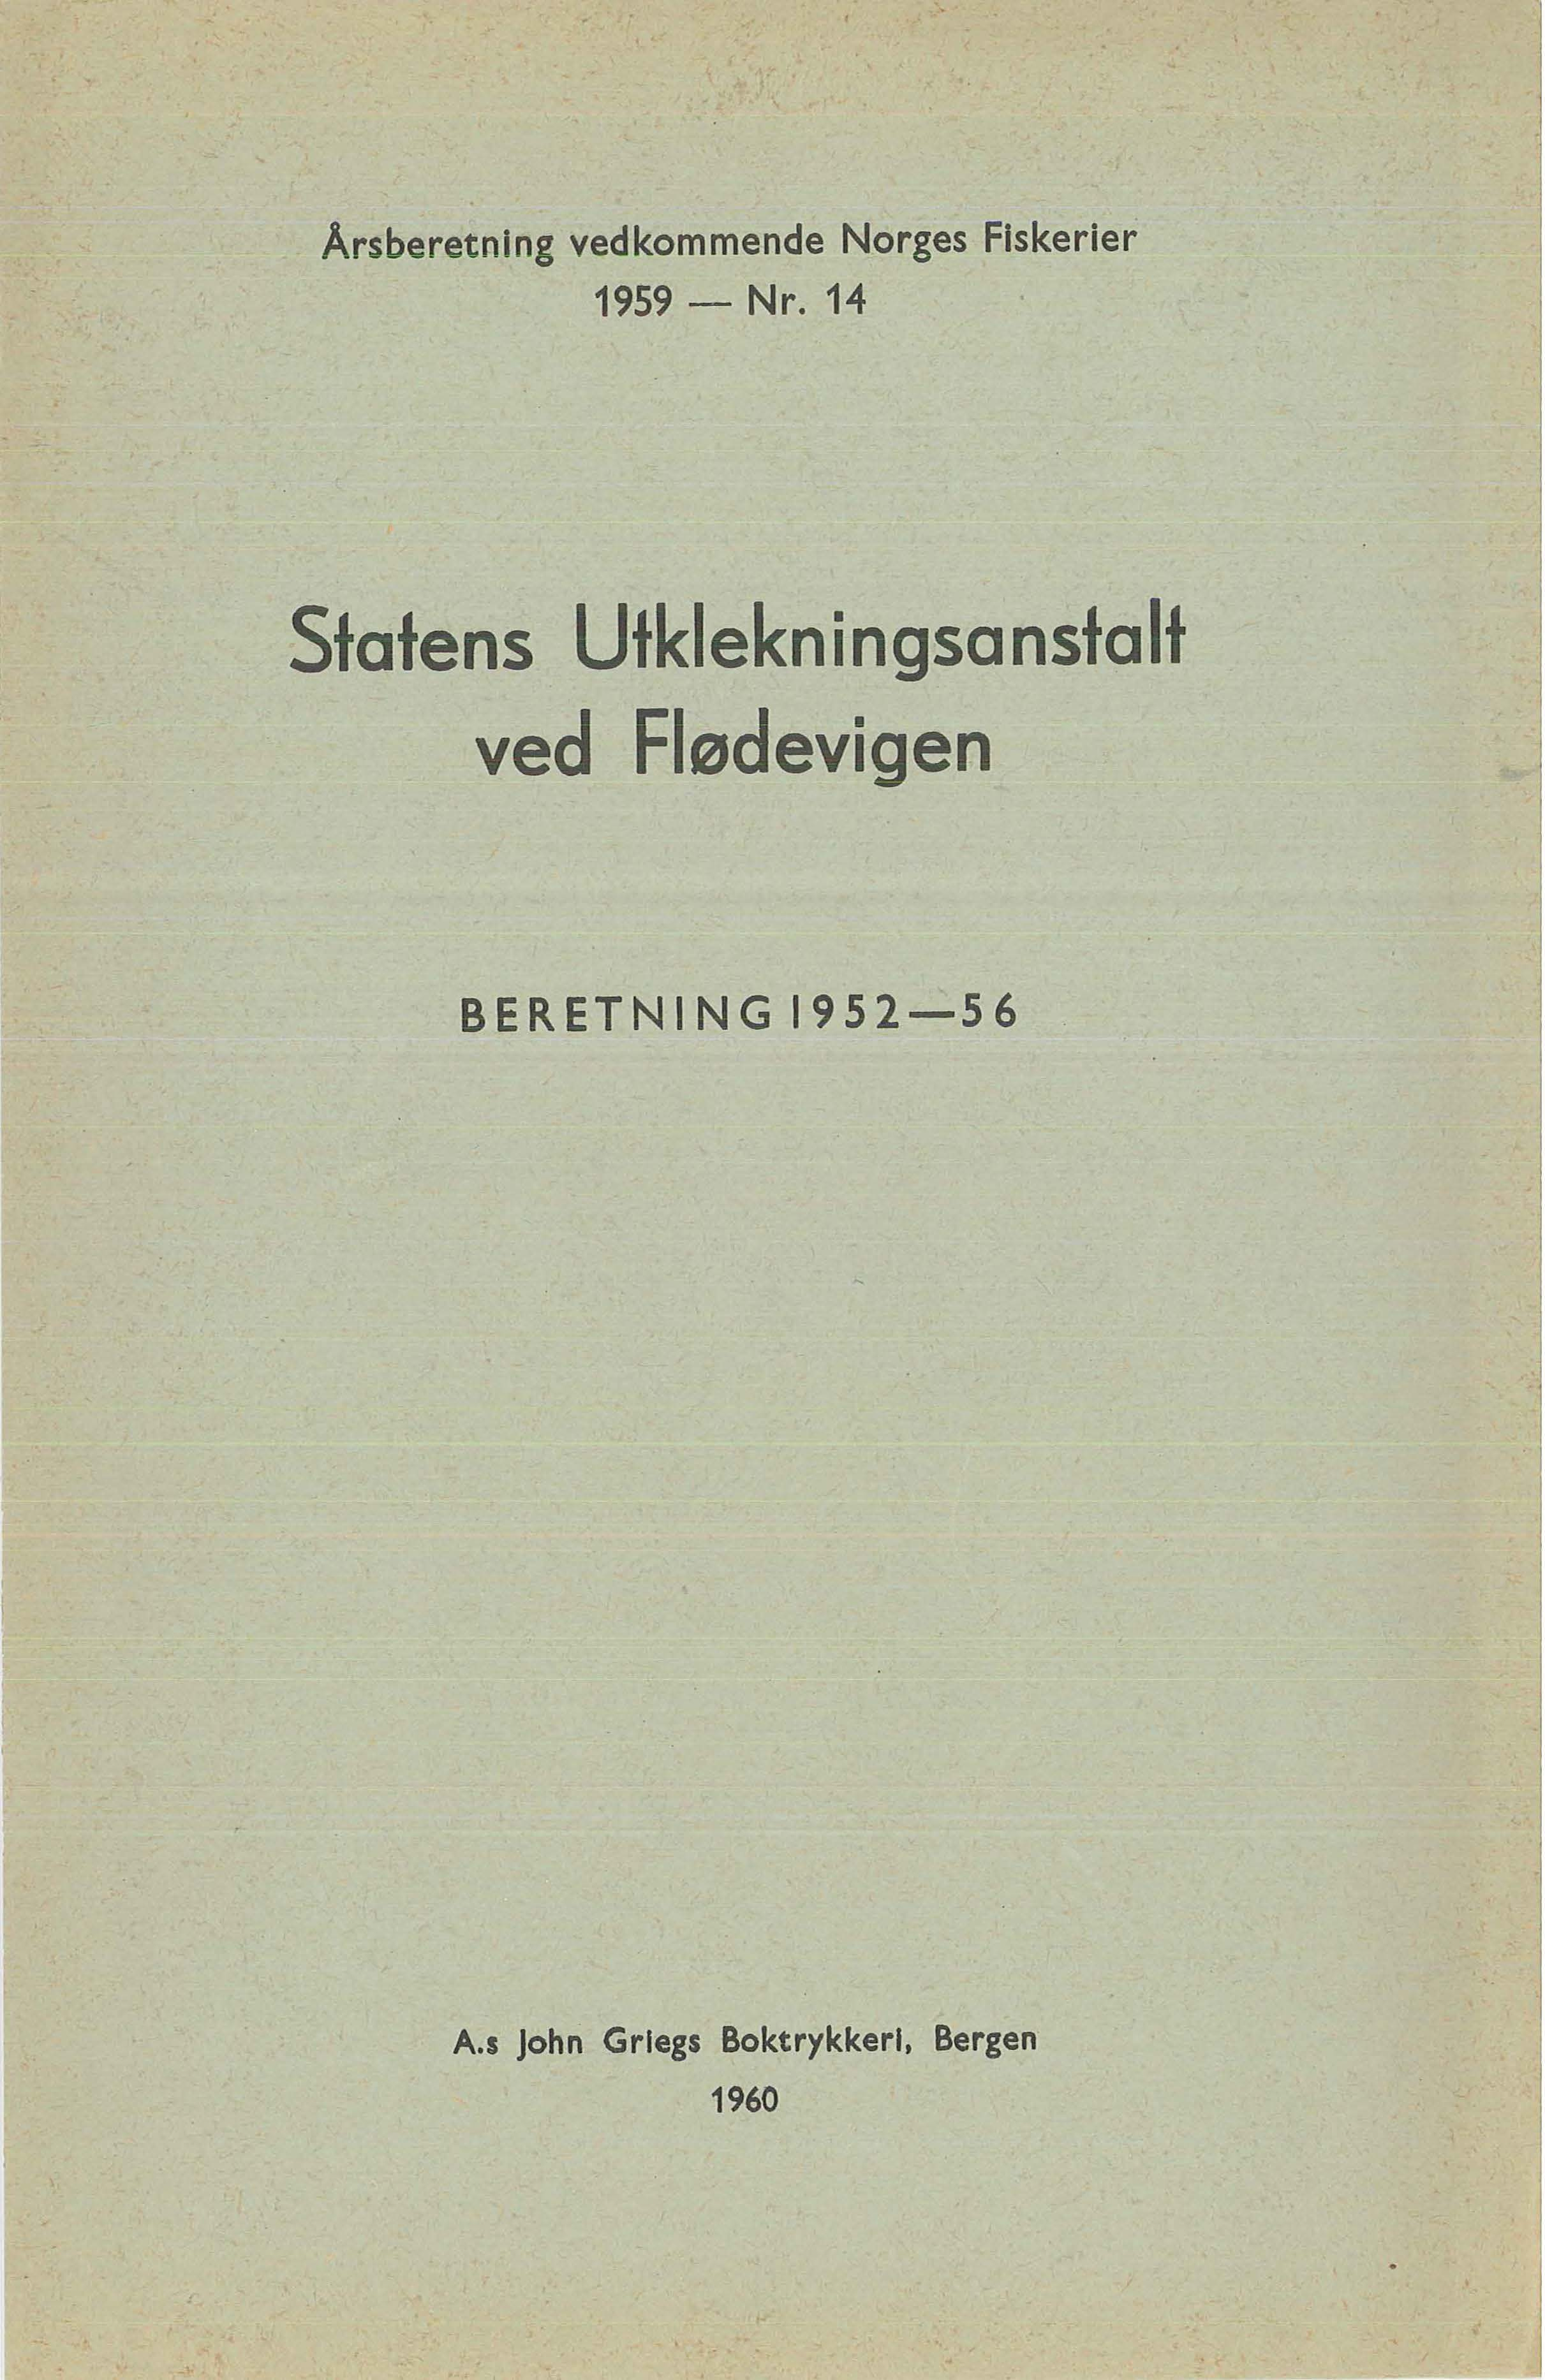 Årsberetning vedkommende Norges Fiskerier 1959- Nr.